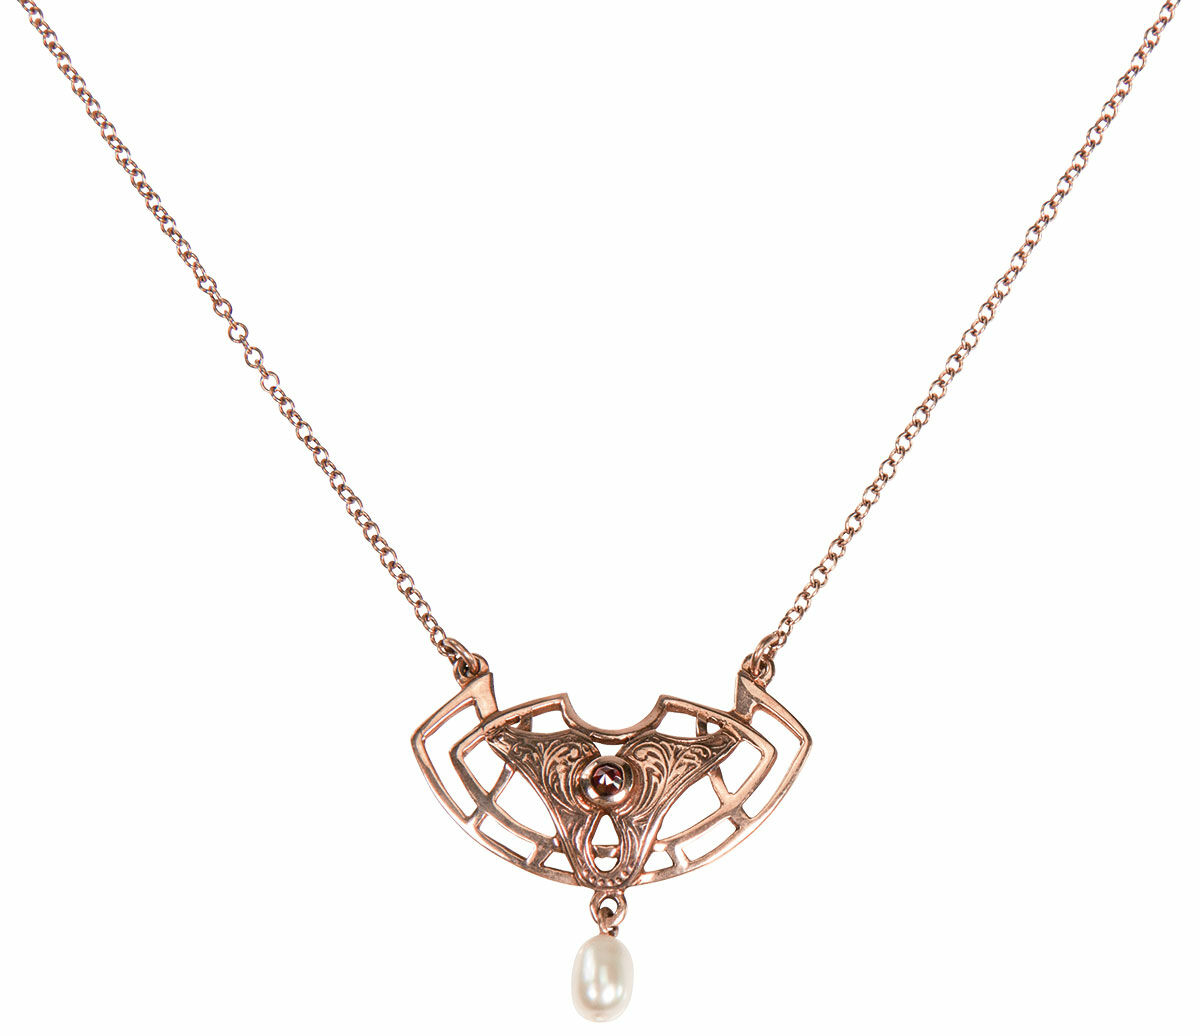 Art Nouveau necklace "Dianne" with pearl